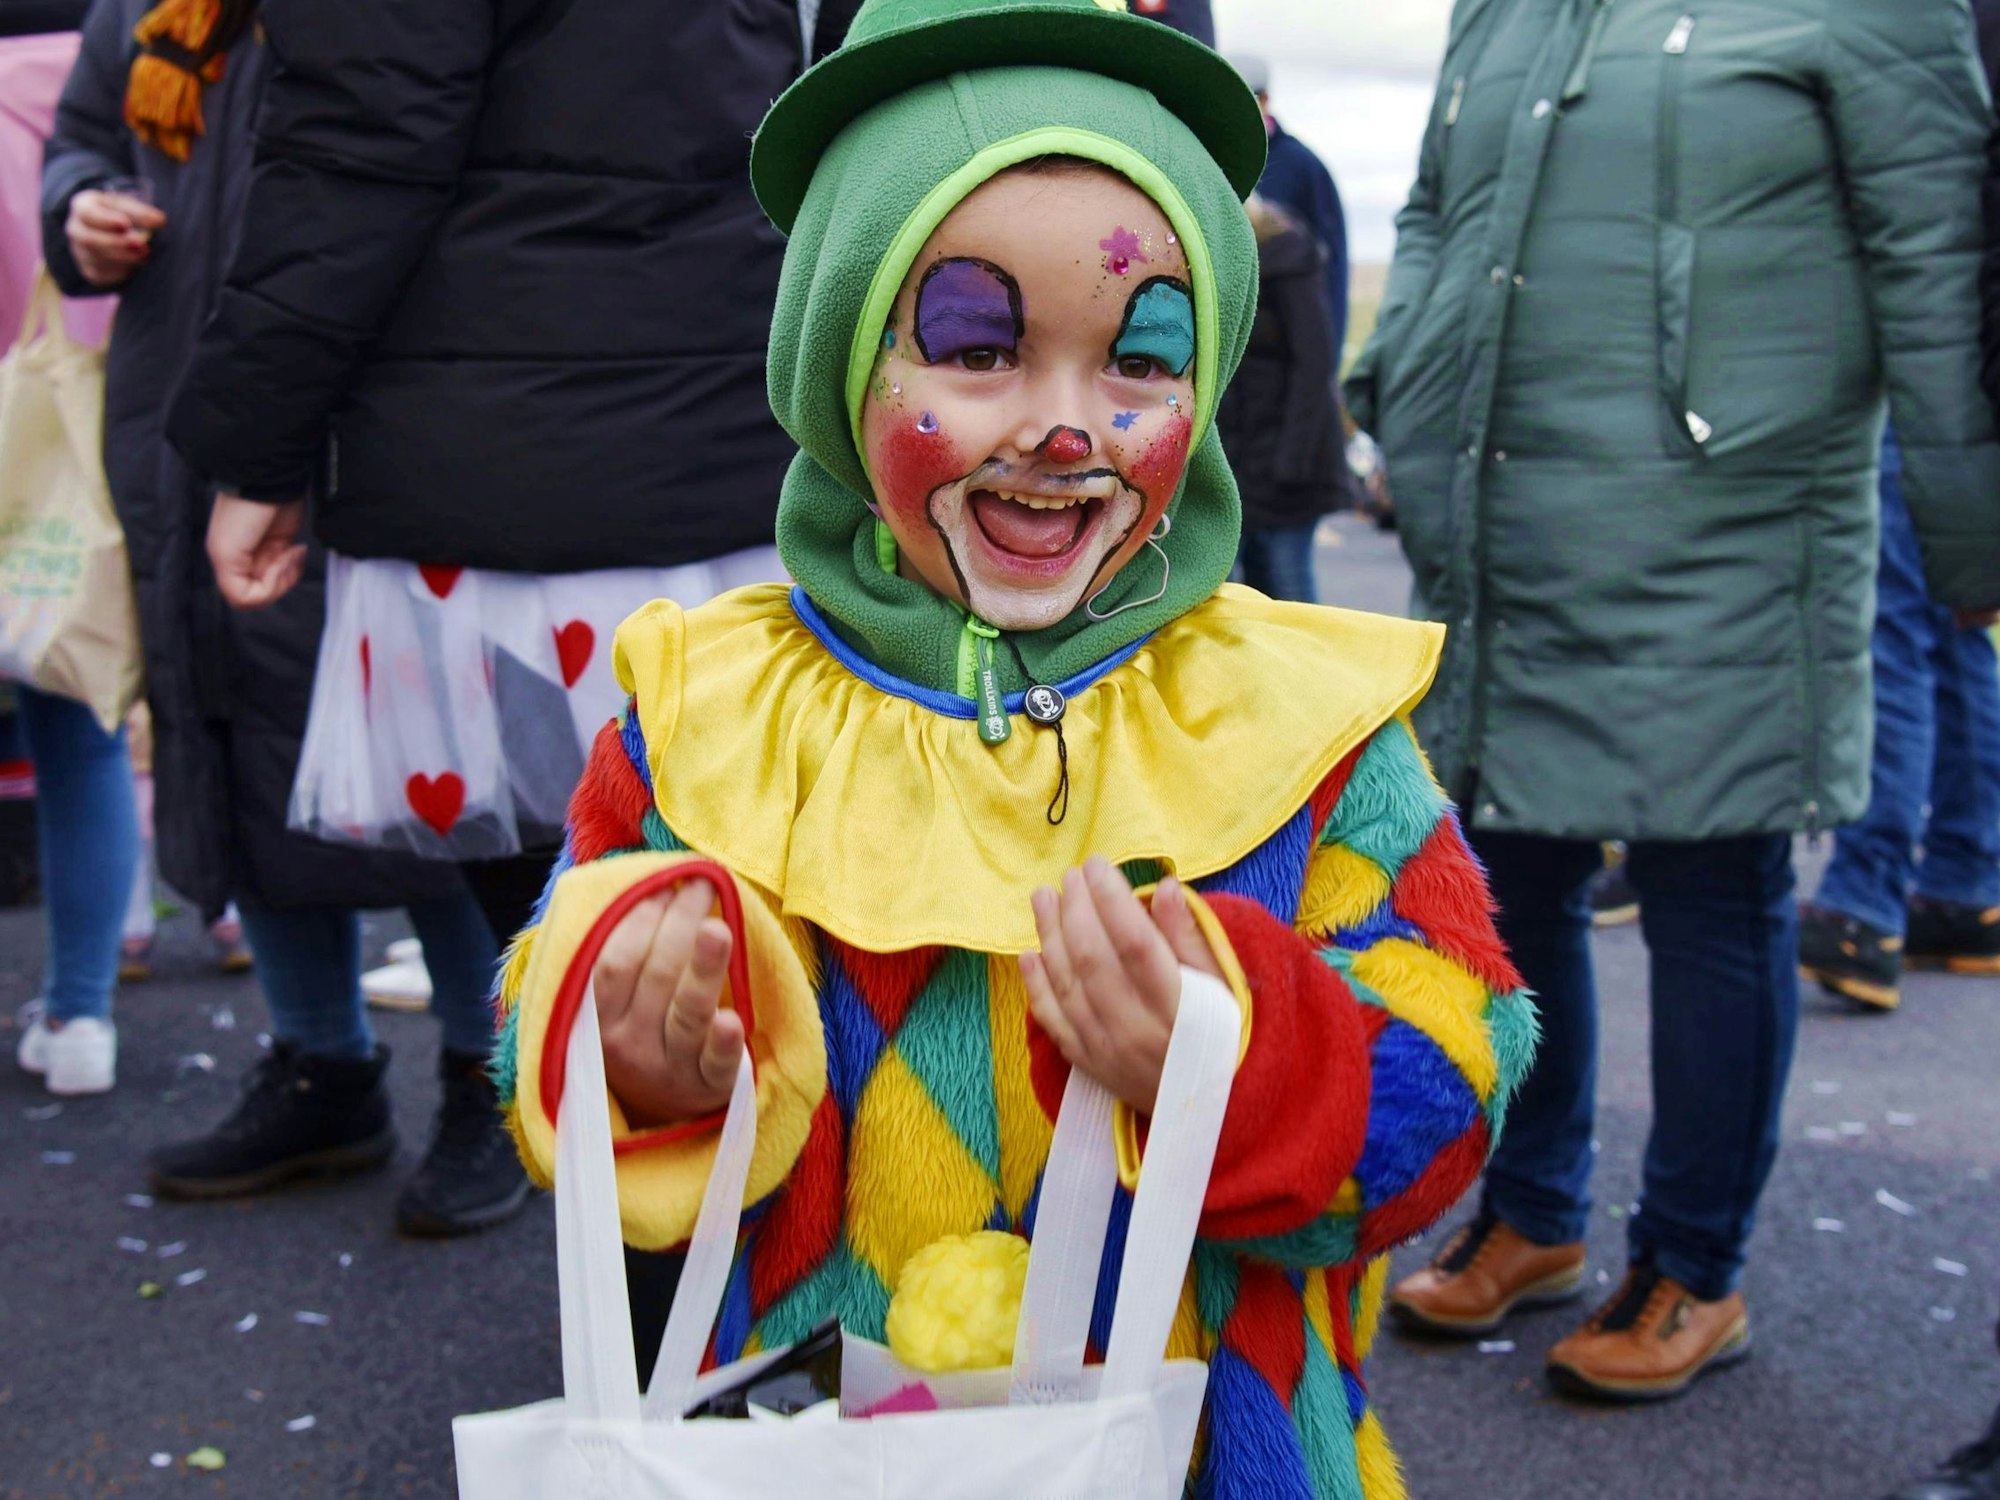 Ein als Clown verkleideter Junge steht mit Tüte am Straßenrand.